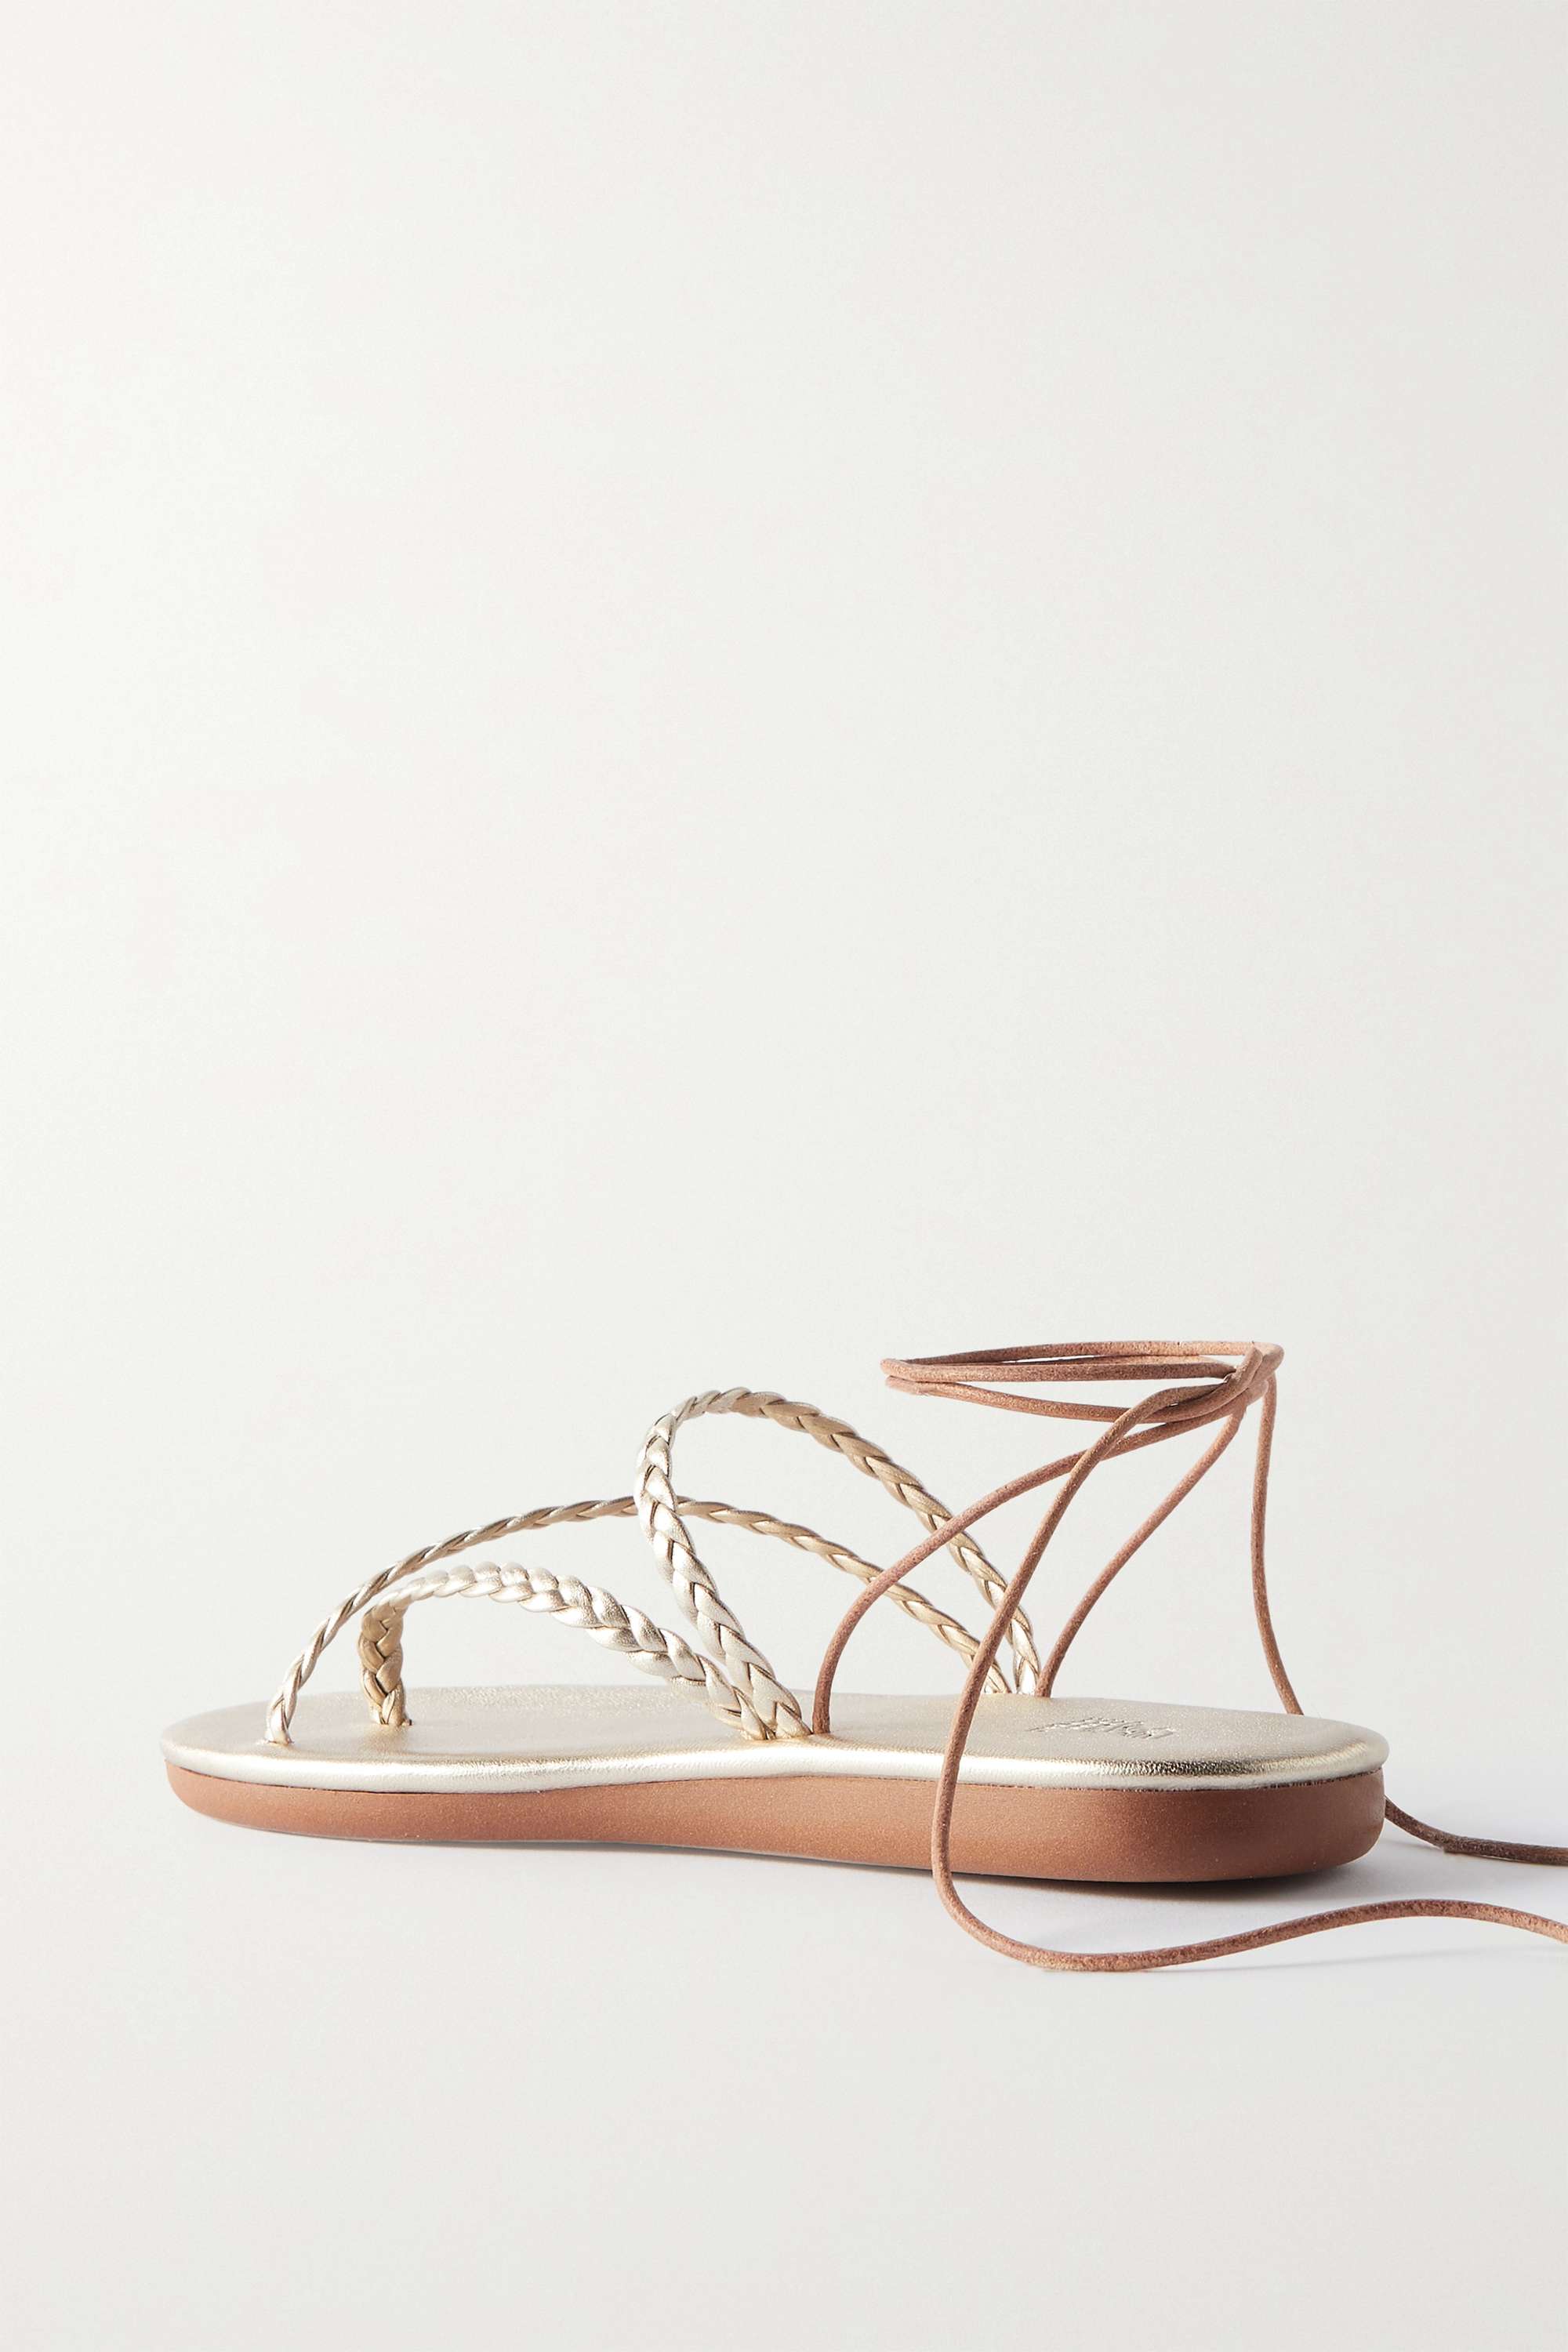 ANCIENT GREEK SANDALS плетеные сандалии Plage из металлизированной кожи, золото тайские сандалии off white ancient greek sandals